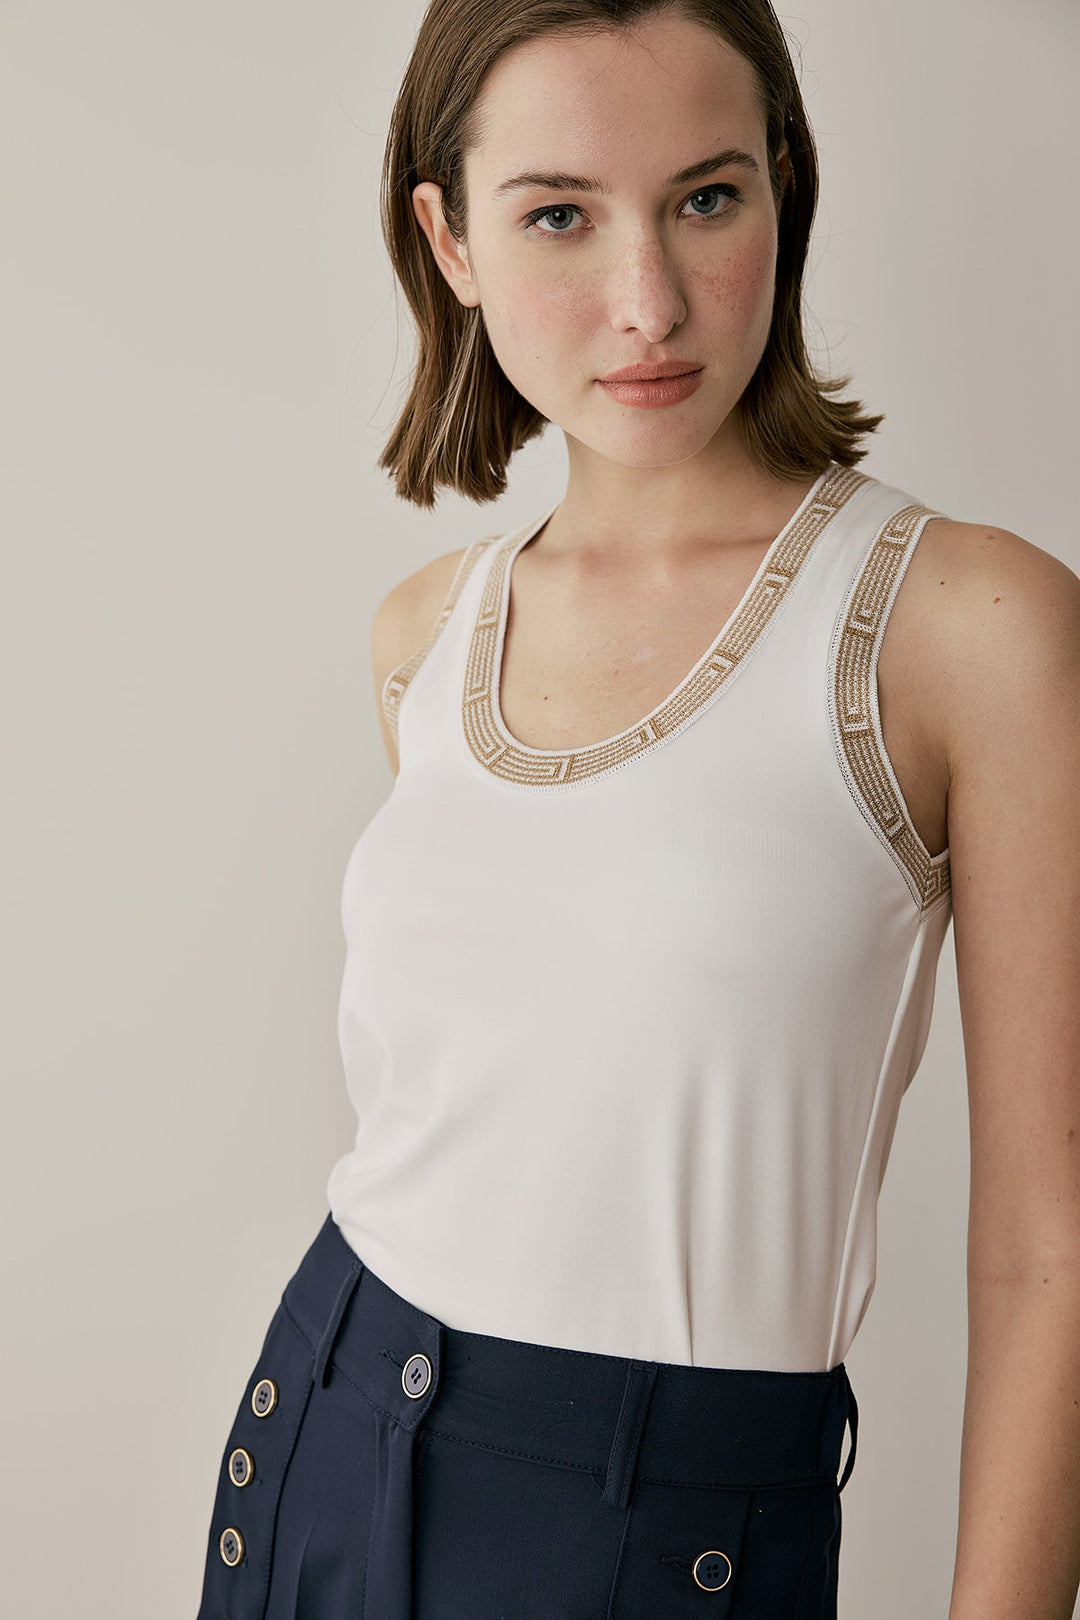 Μπλούζα με διακοσμιτική τρέσα Figaro Fashion - A Collection Boutique